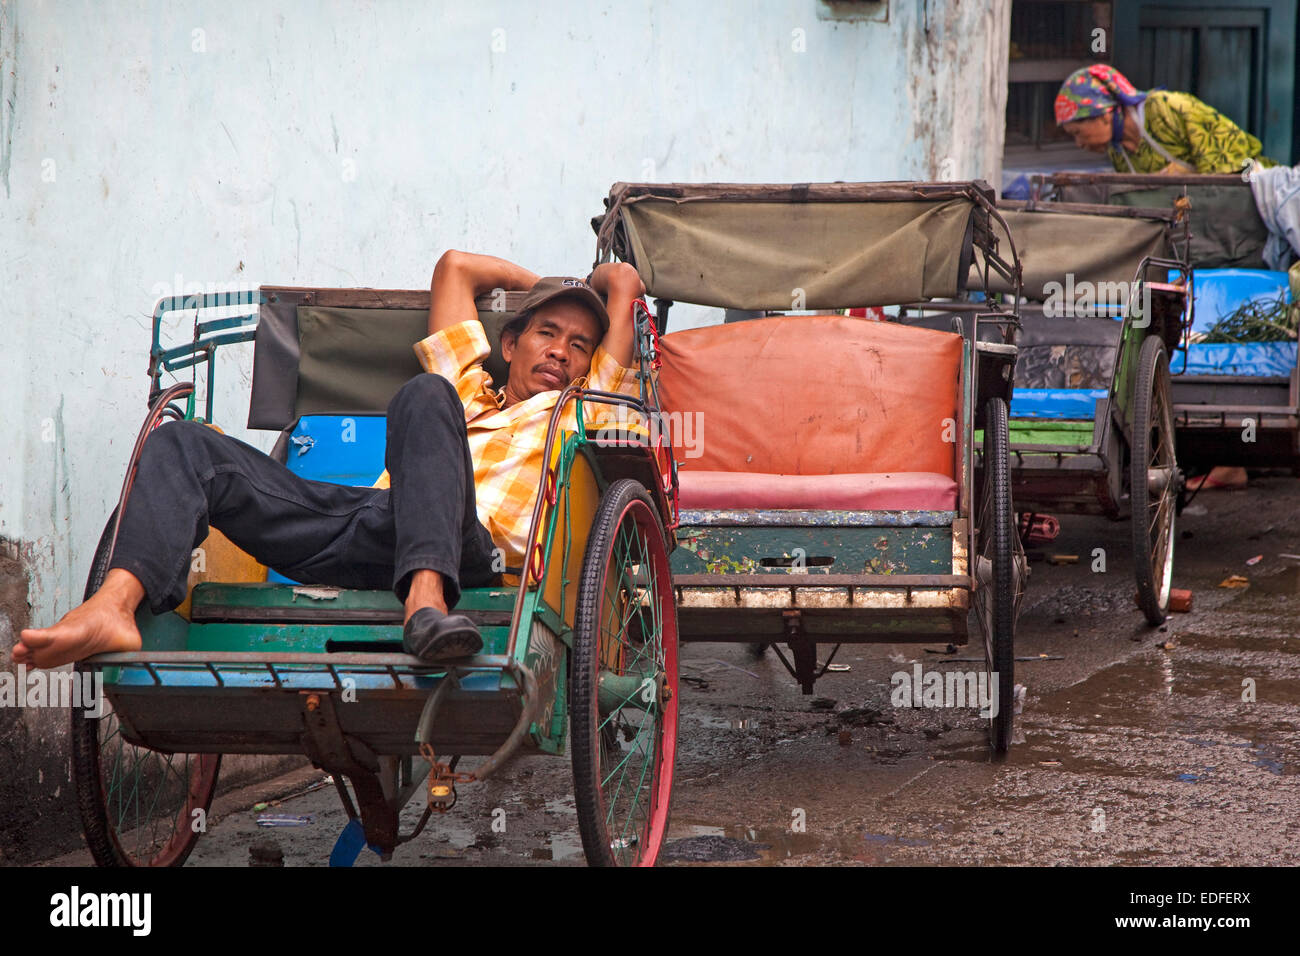 Indonesisch Becak-Fahrer wartet auf Kunden in seinem Zyklus Rickshaw, Jakarta, Java, Indonesien Stockfoto